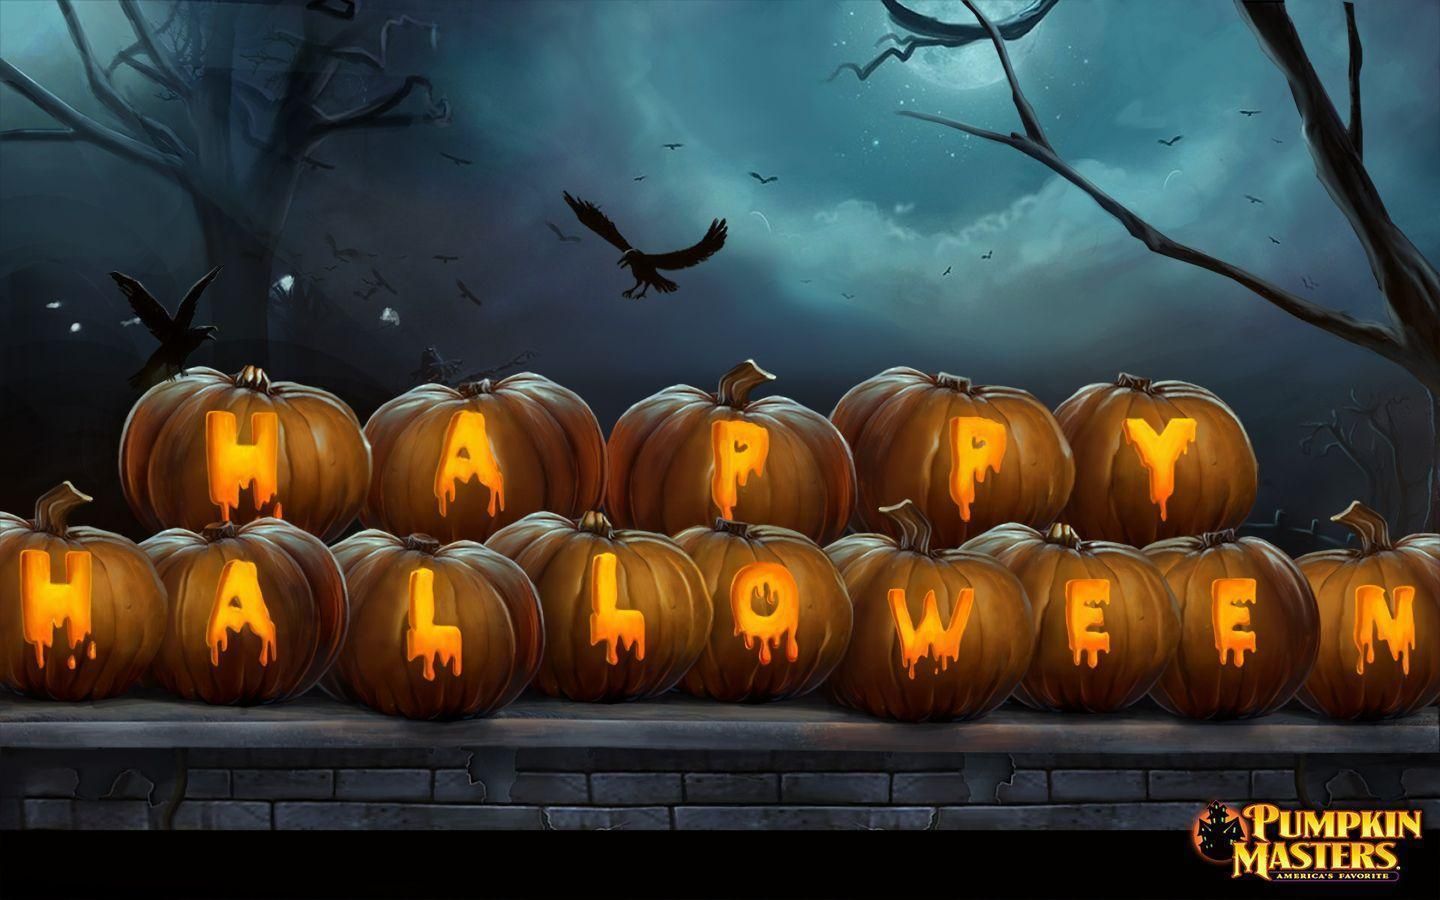 Free Download Happy Halloween Desktop Background 2. Halloween image, Halloween wallpaper, Halloween desktop wallpaper